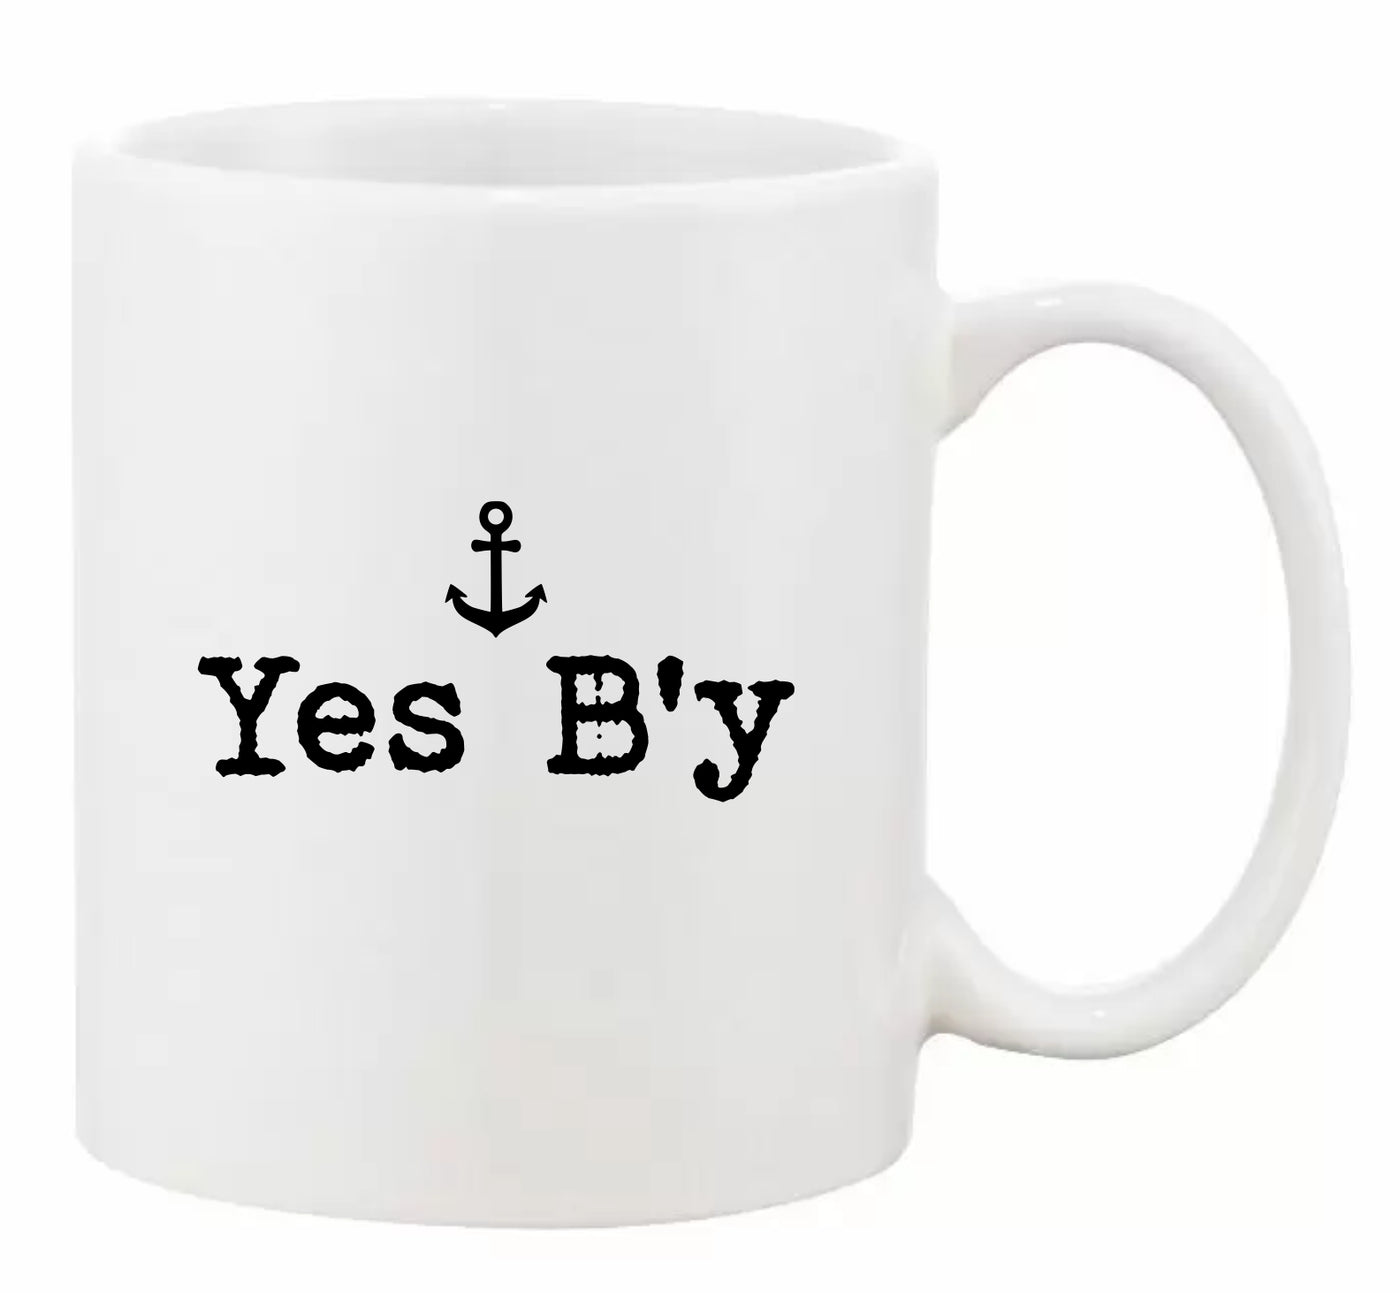 "Yes B'y” Mug